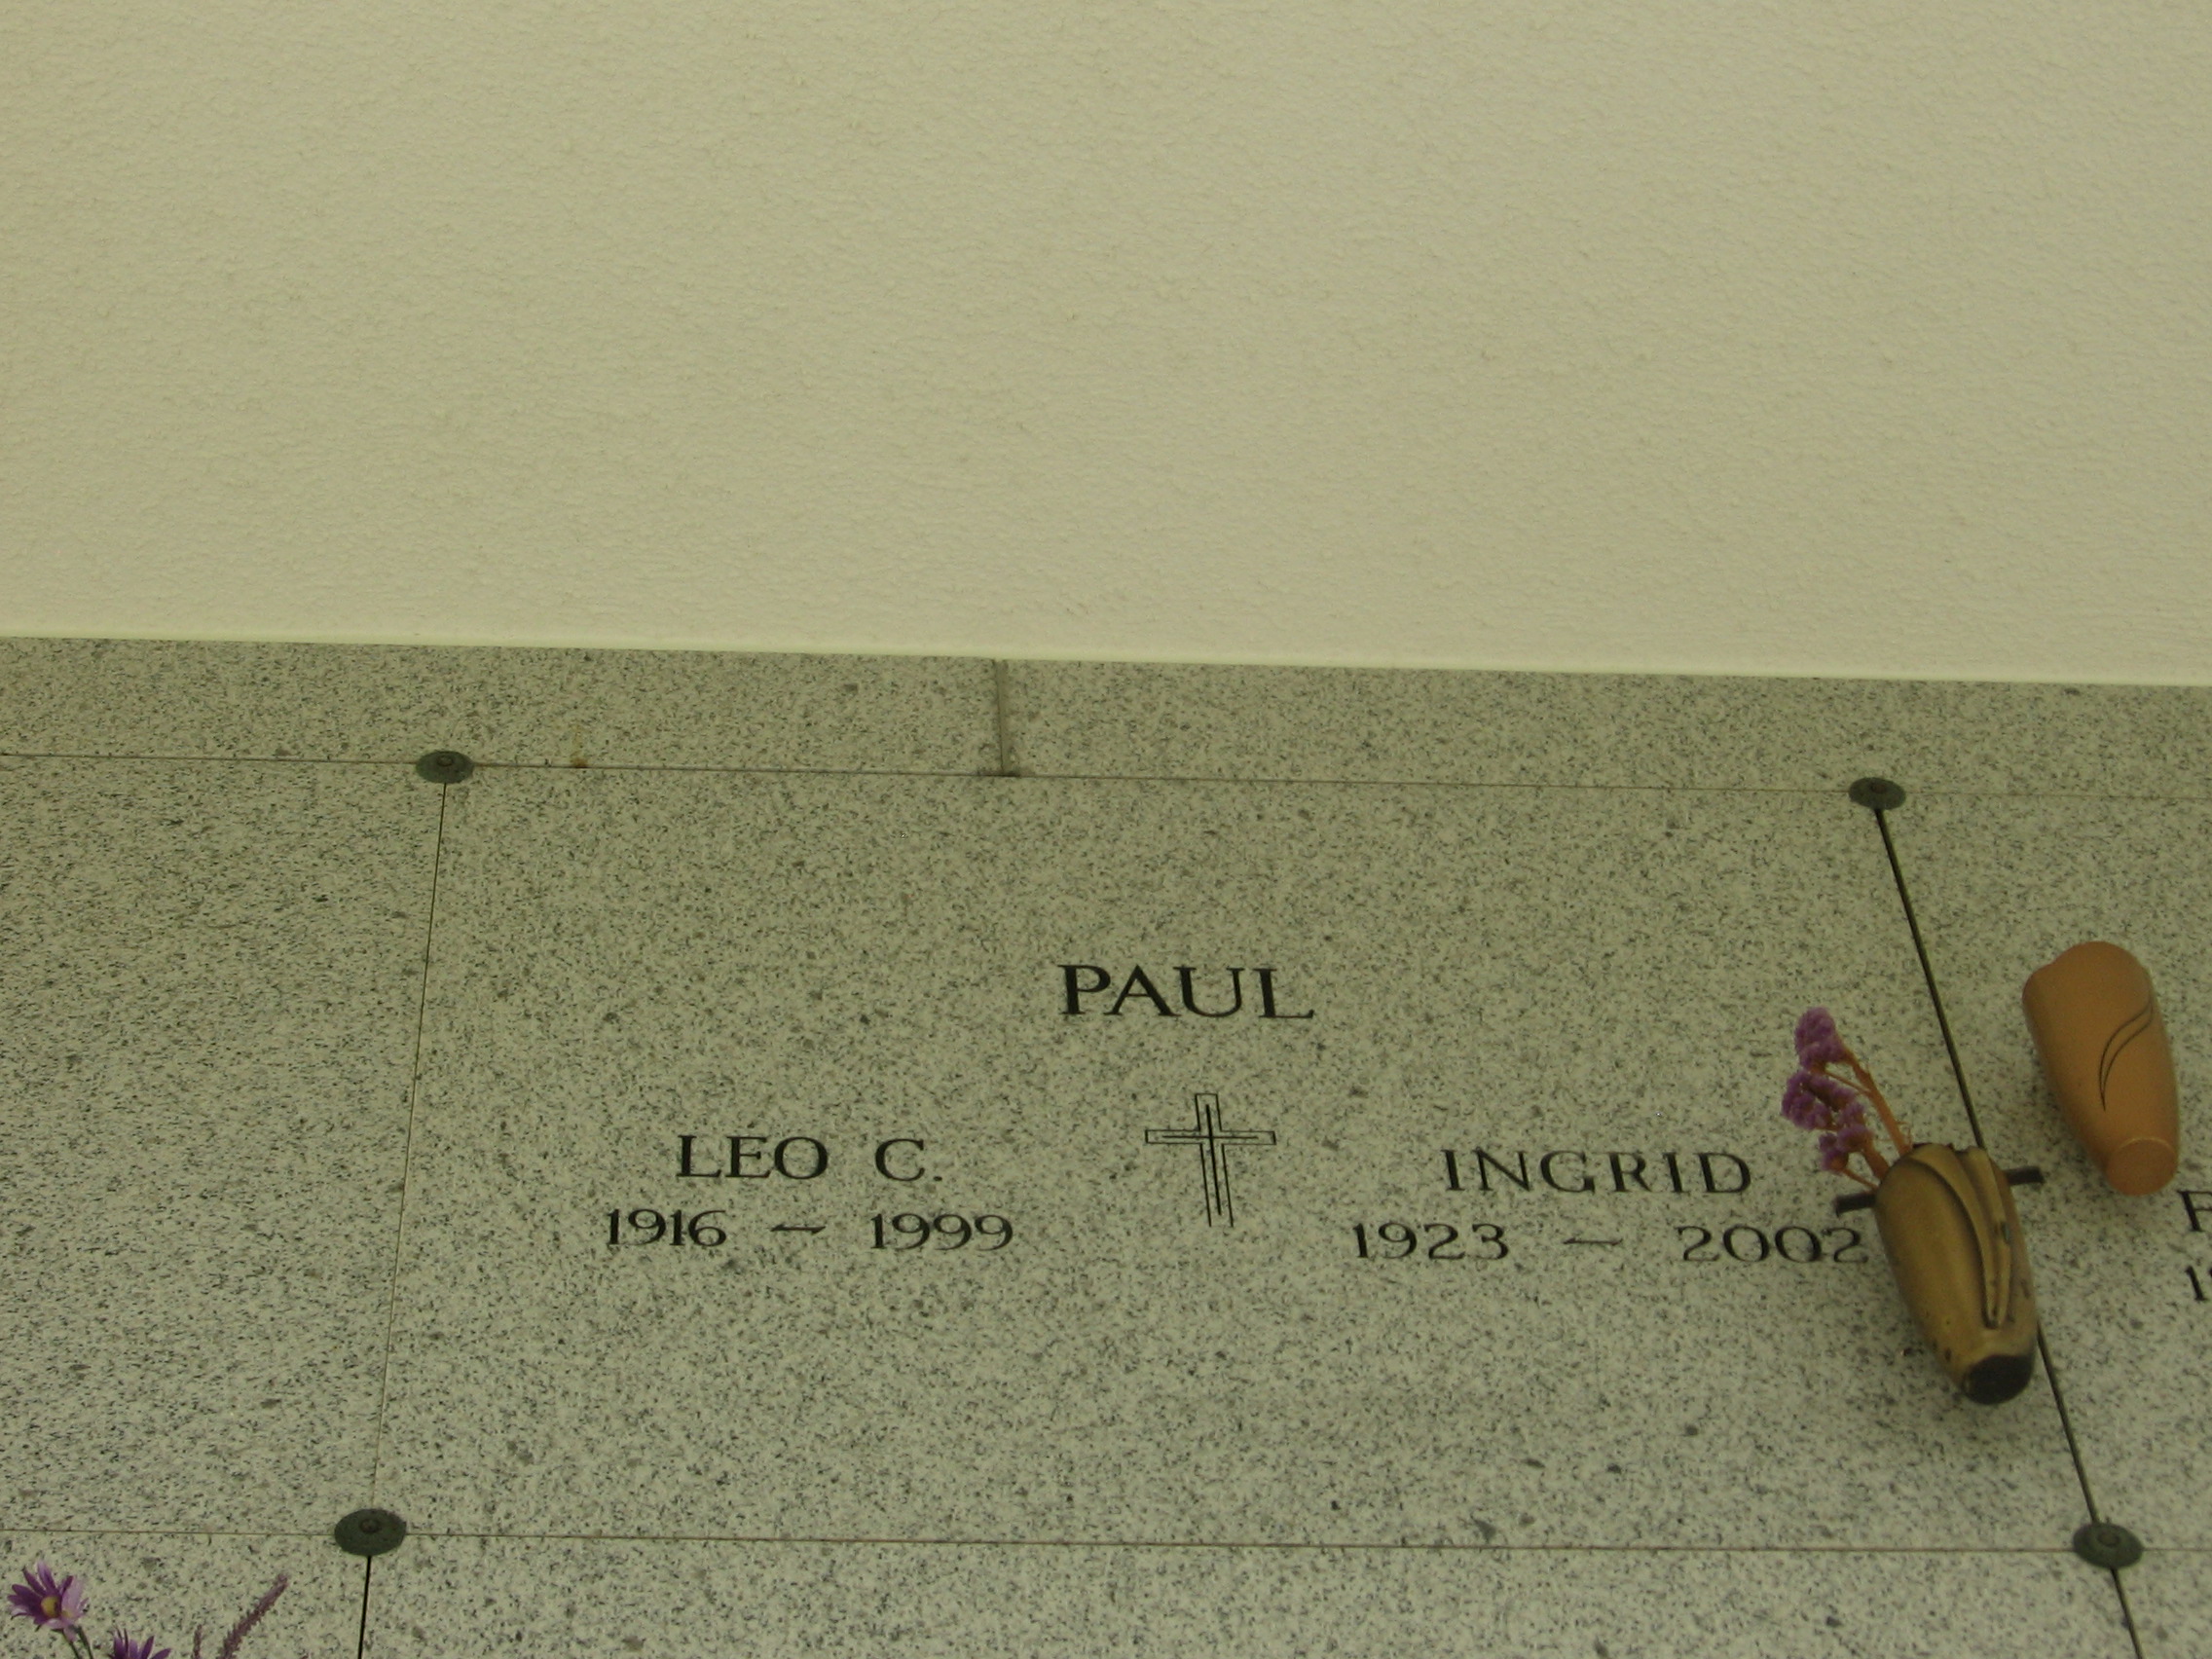 Leo C Paul